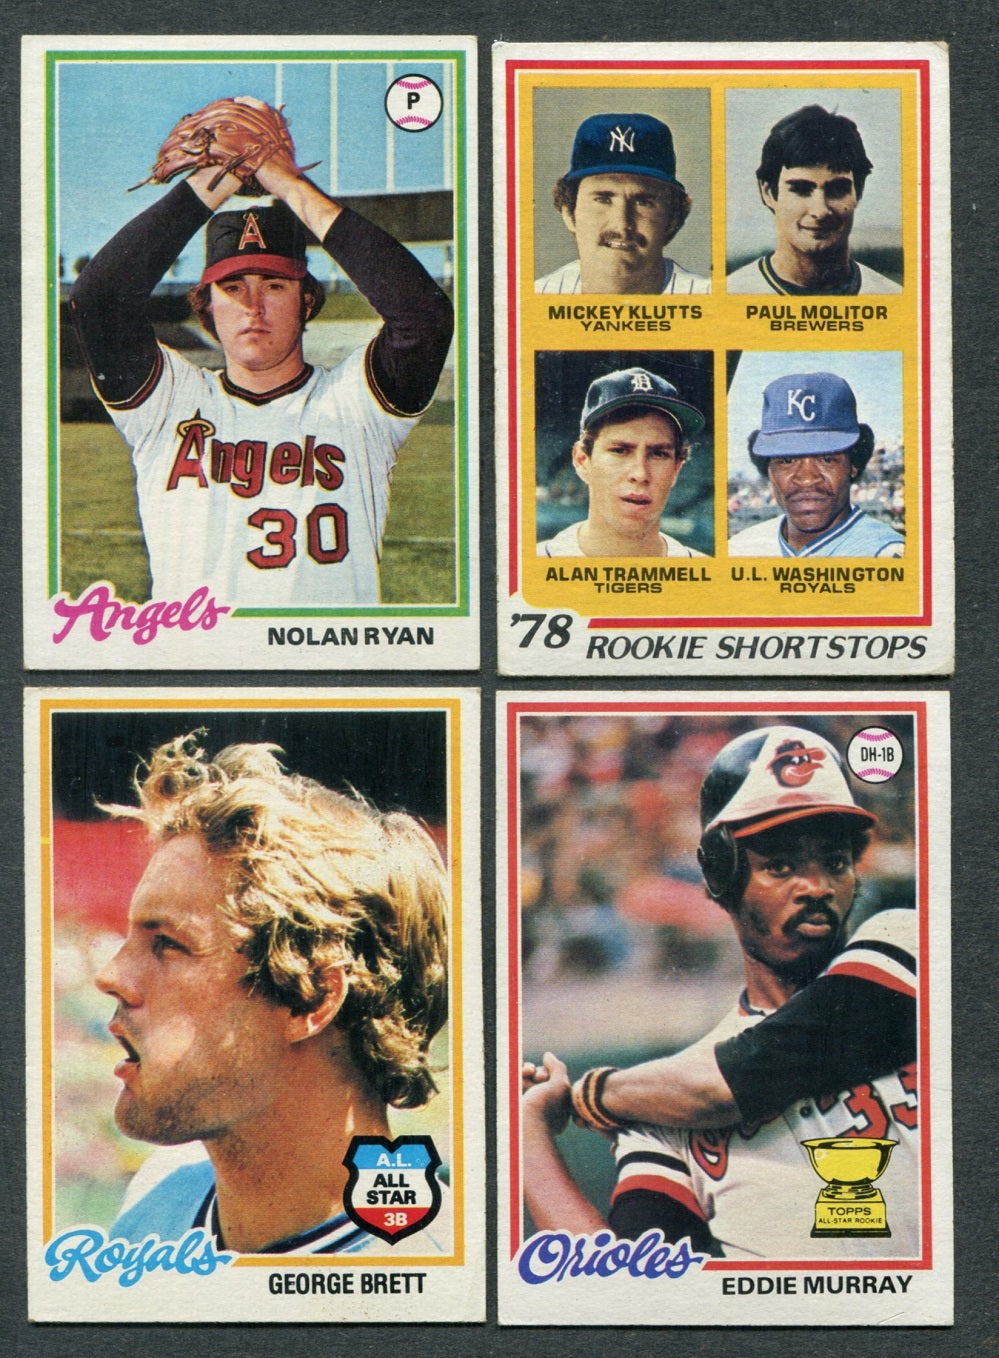 1978 Topps Baseball Complete Set VG/EX EX (726) (24-457)